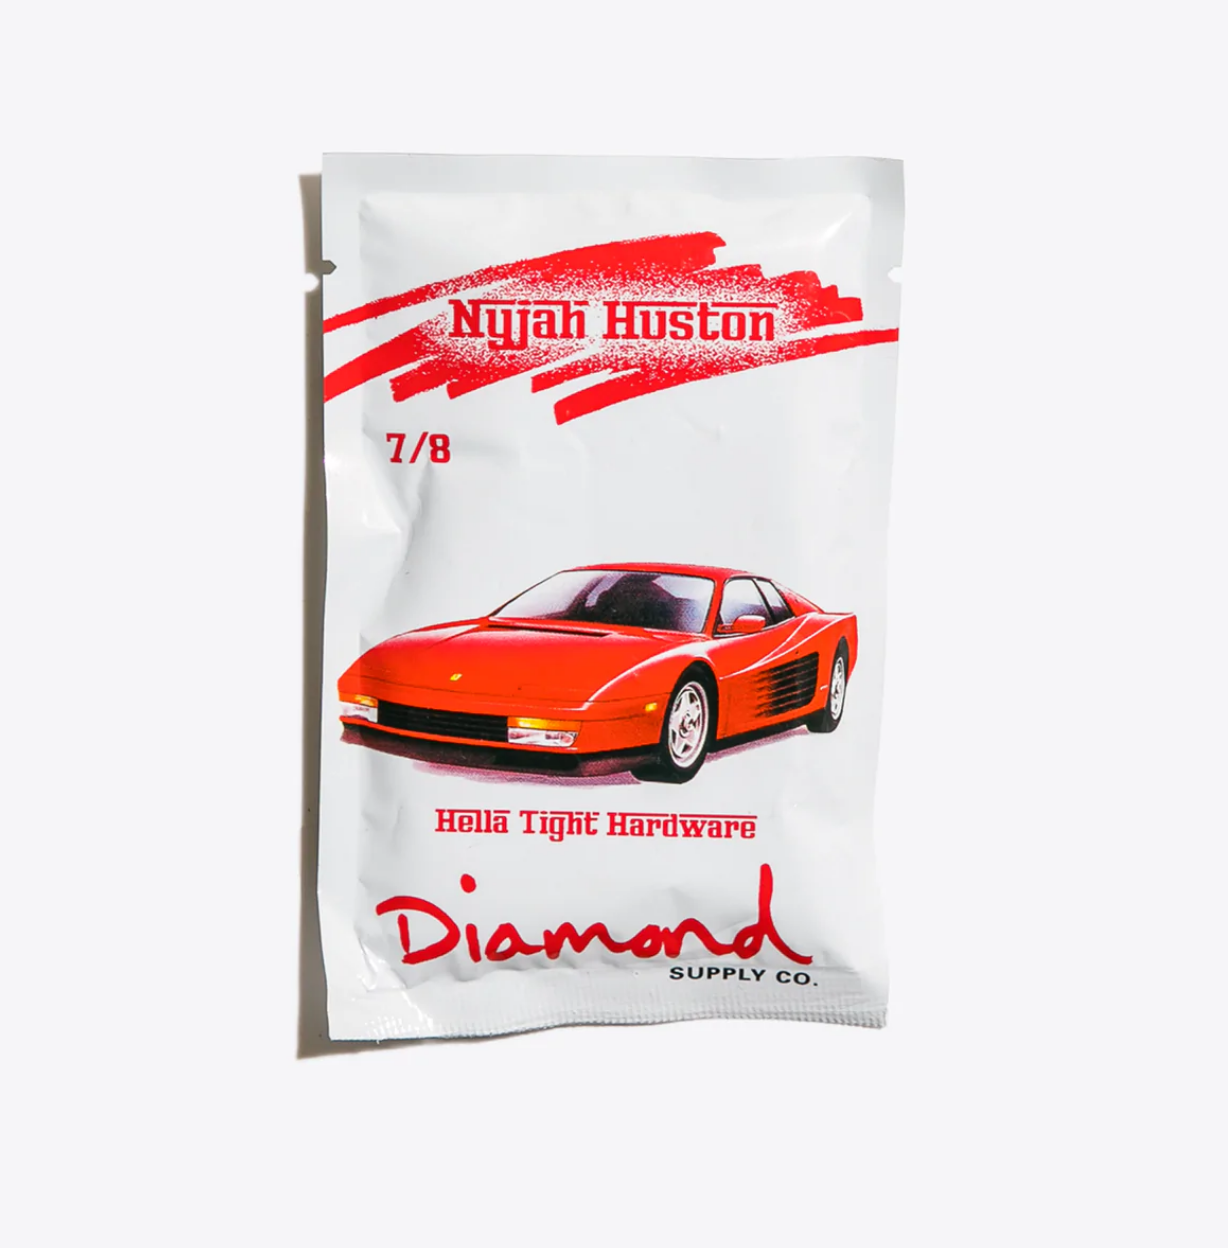 diamond supply co diamond nyjah huston pro 7/8in allen hardware